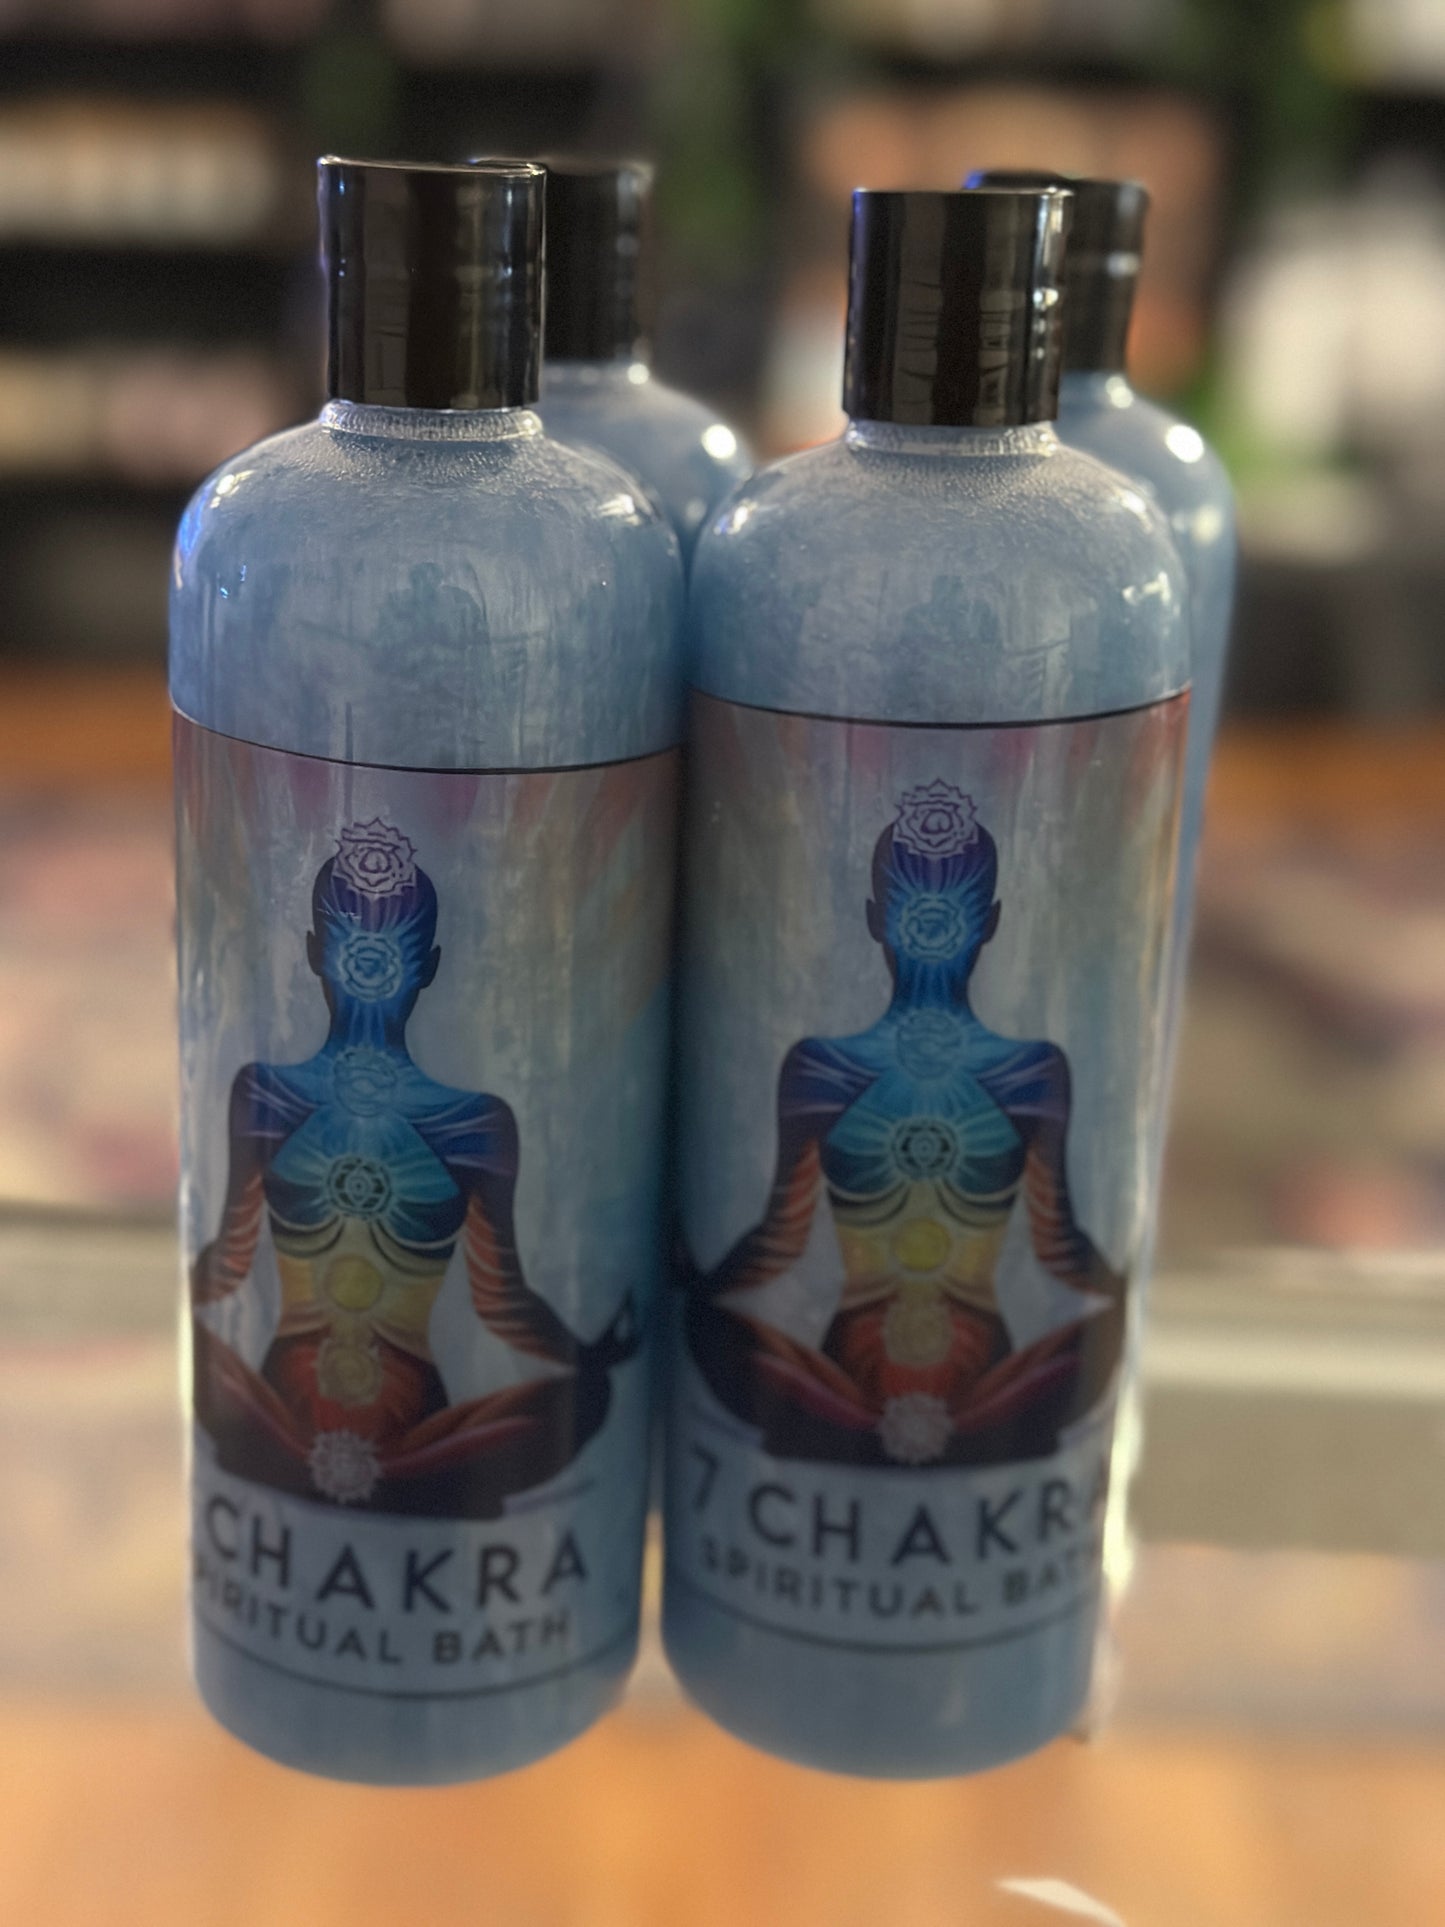 7 Chakra Spiritual Bath